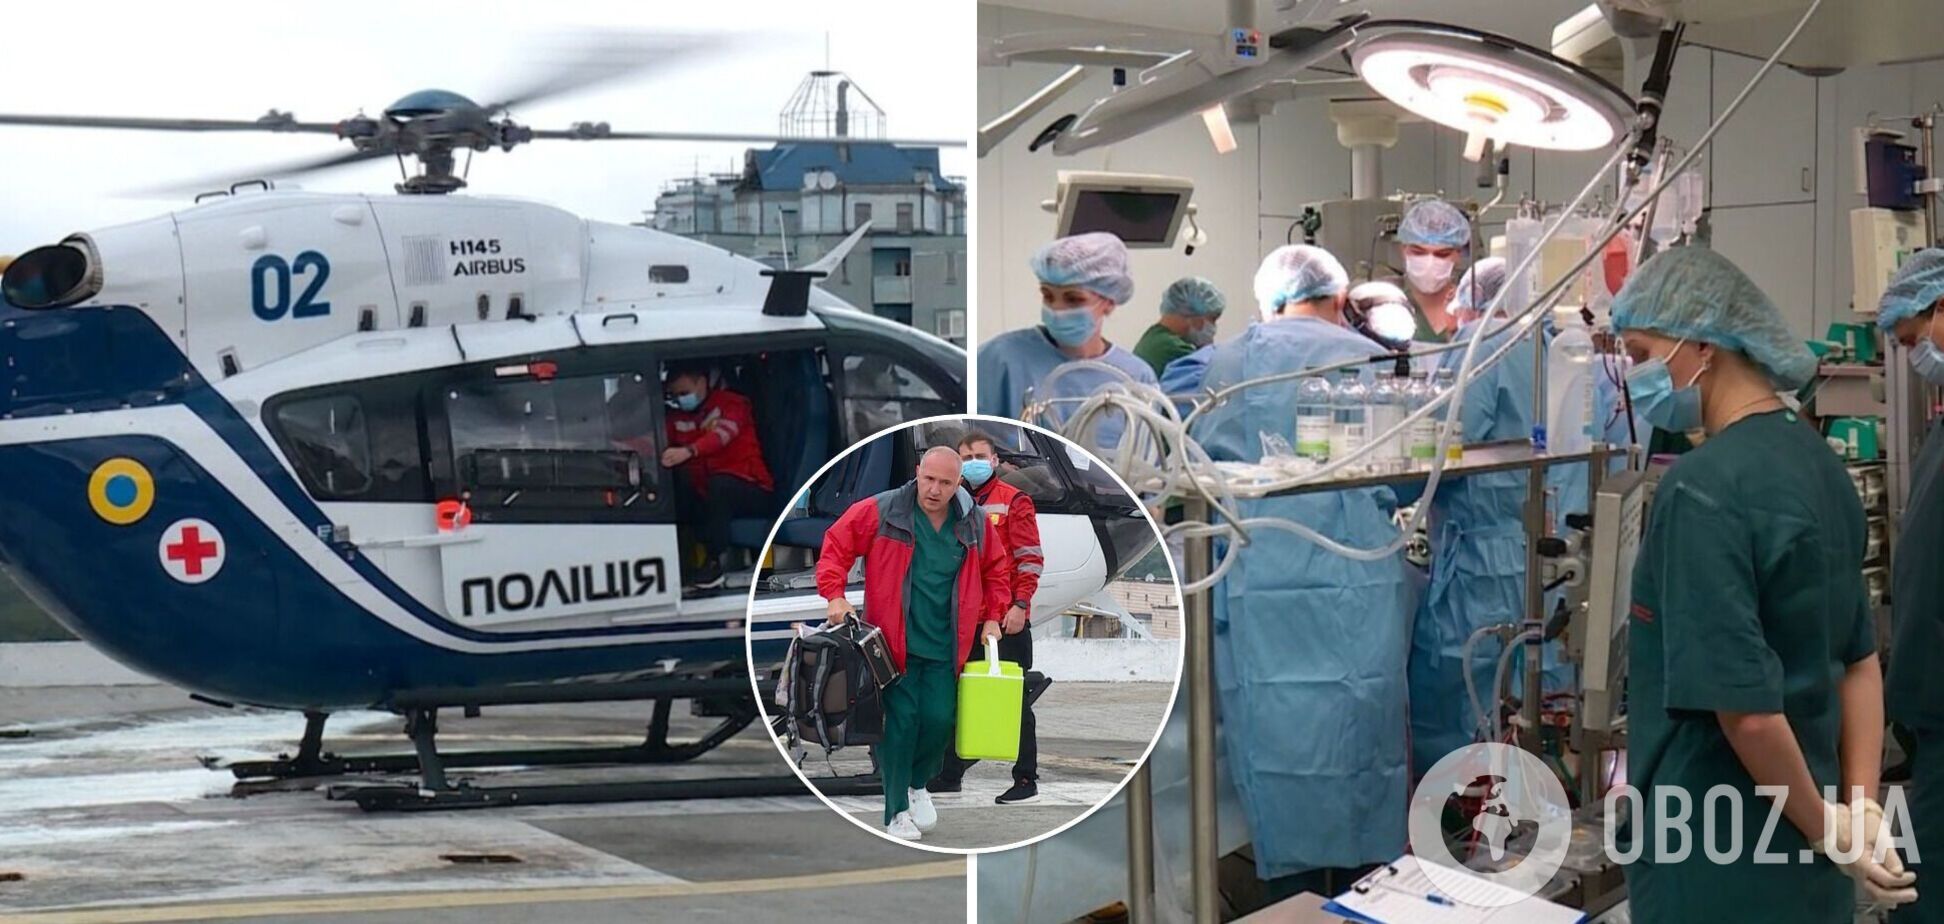 Украинские полицейские помогли спасти жизнь четырем пациентам, доставив донорские органы для пересадки. Видео